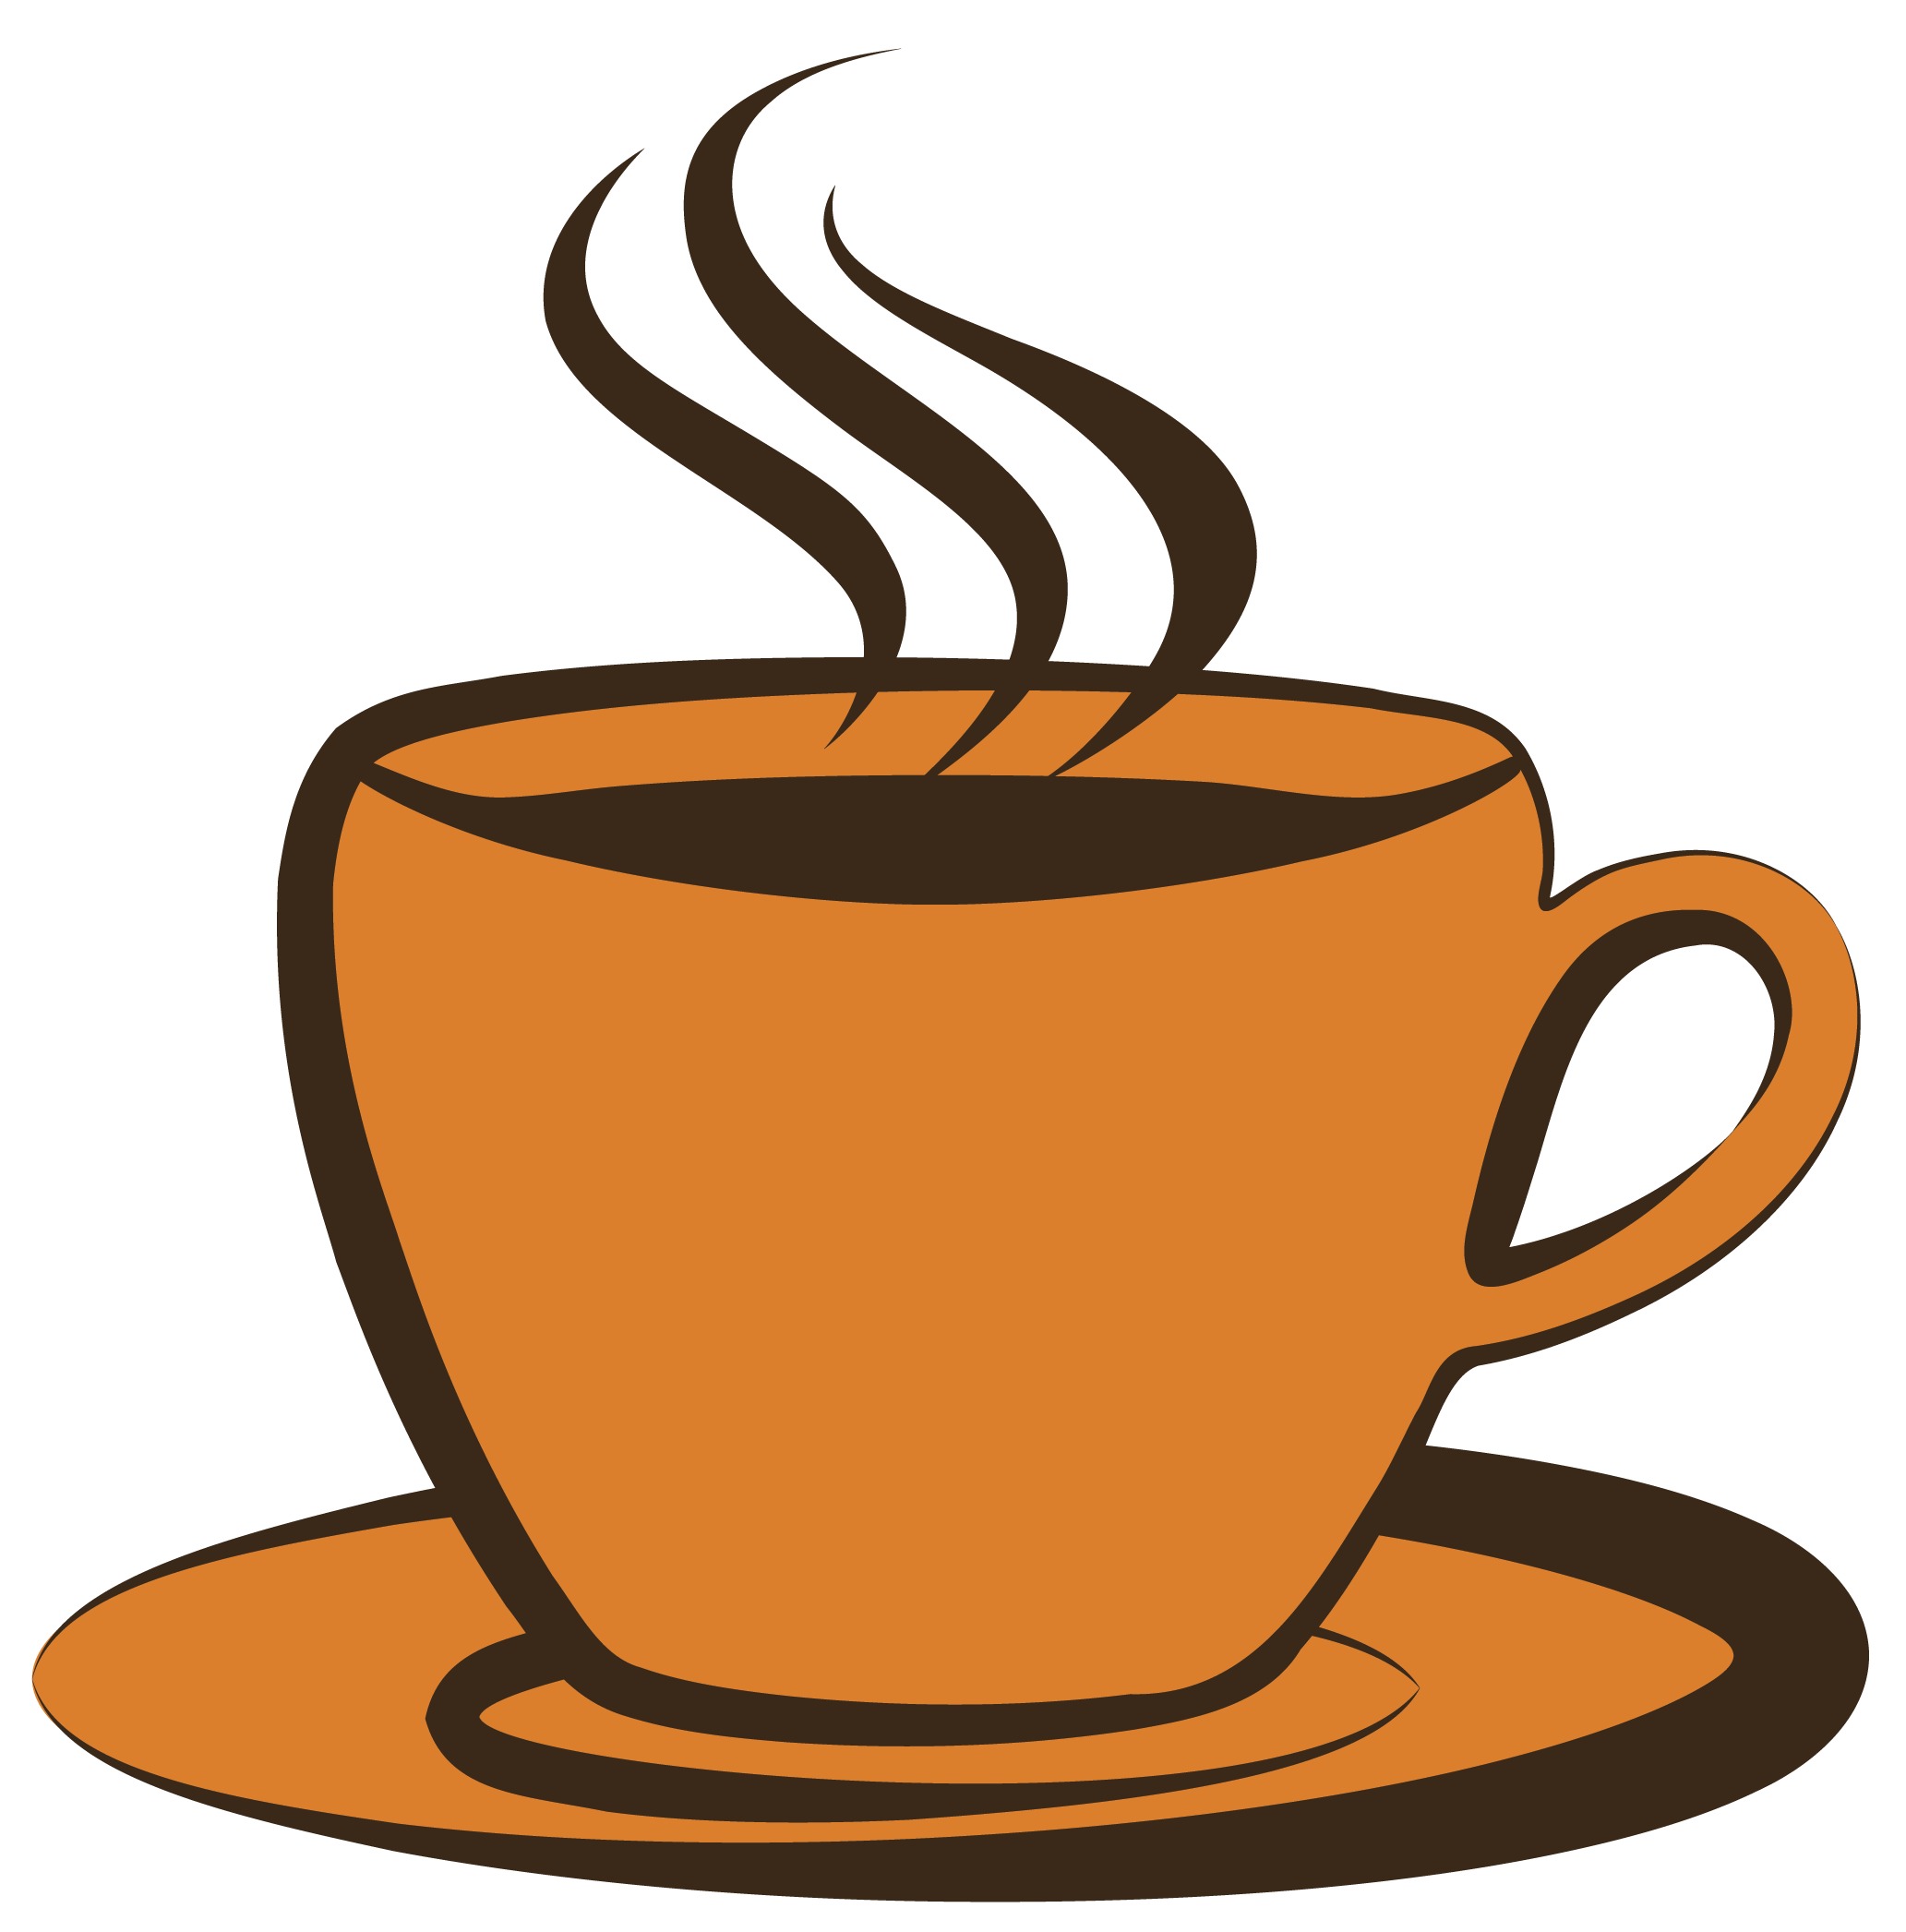 Coffee Mugs Clip Art - Clipart .